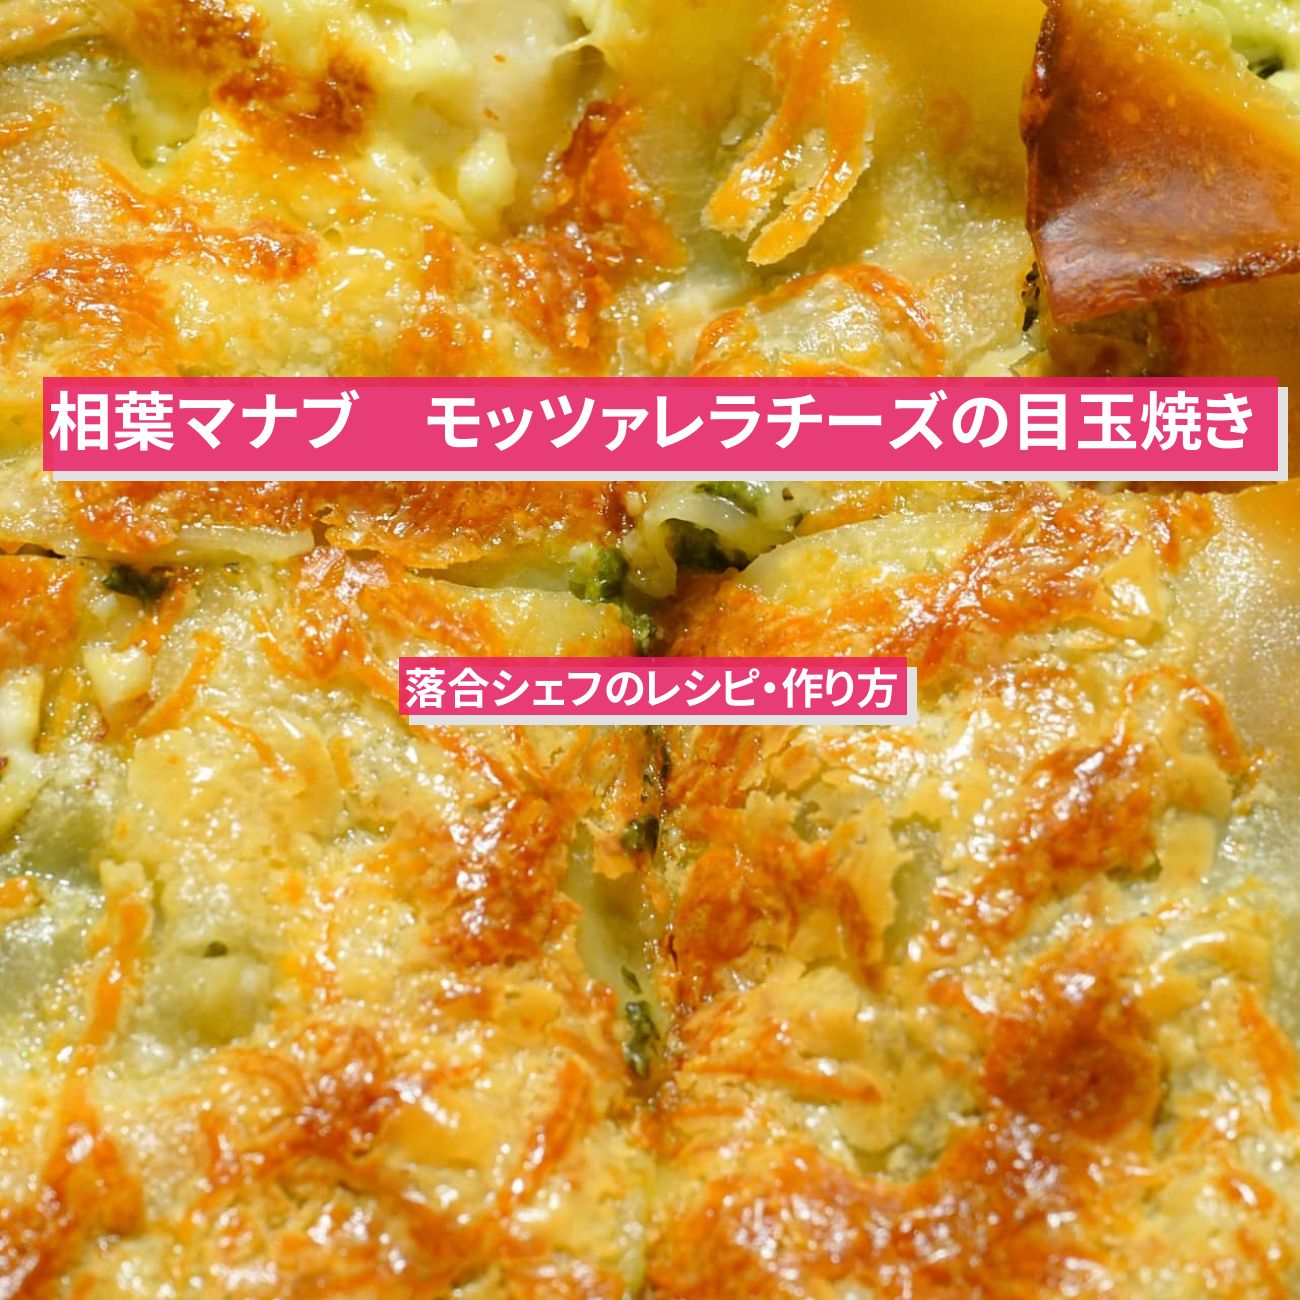 【相葉マナブ】『モッツァレラチーズの目玉焼き』落合務シェフのレシピ・作り方